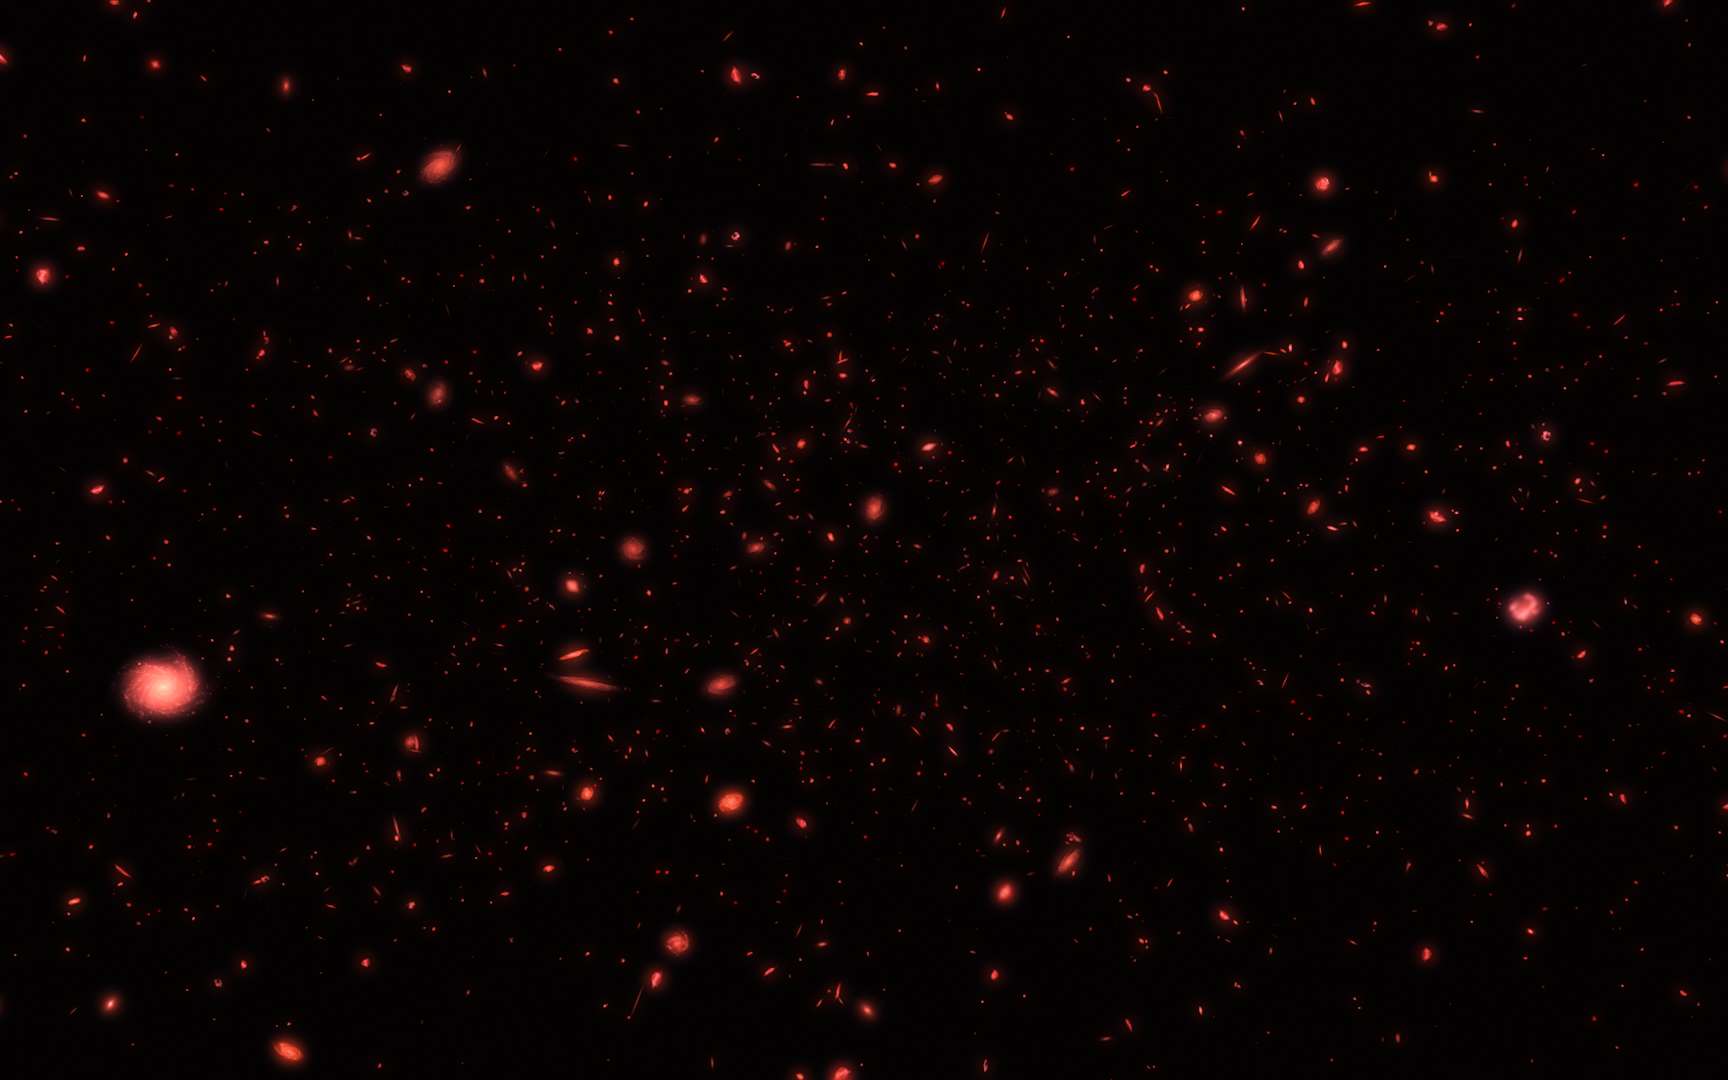 Une vue d'artiste des premières galaxies après le Big Bang observées dans l'infrarouge. © ESA/Hubble, M. Kornmesser and Nasa